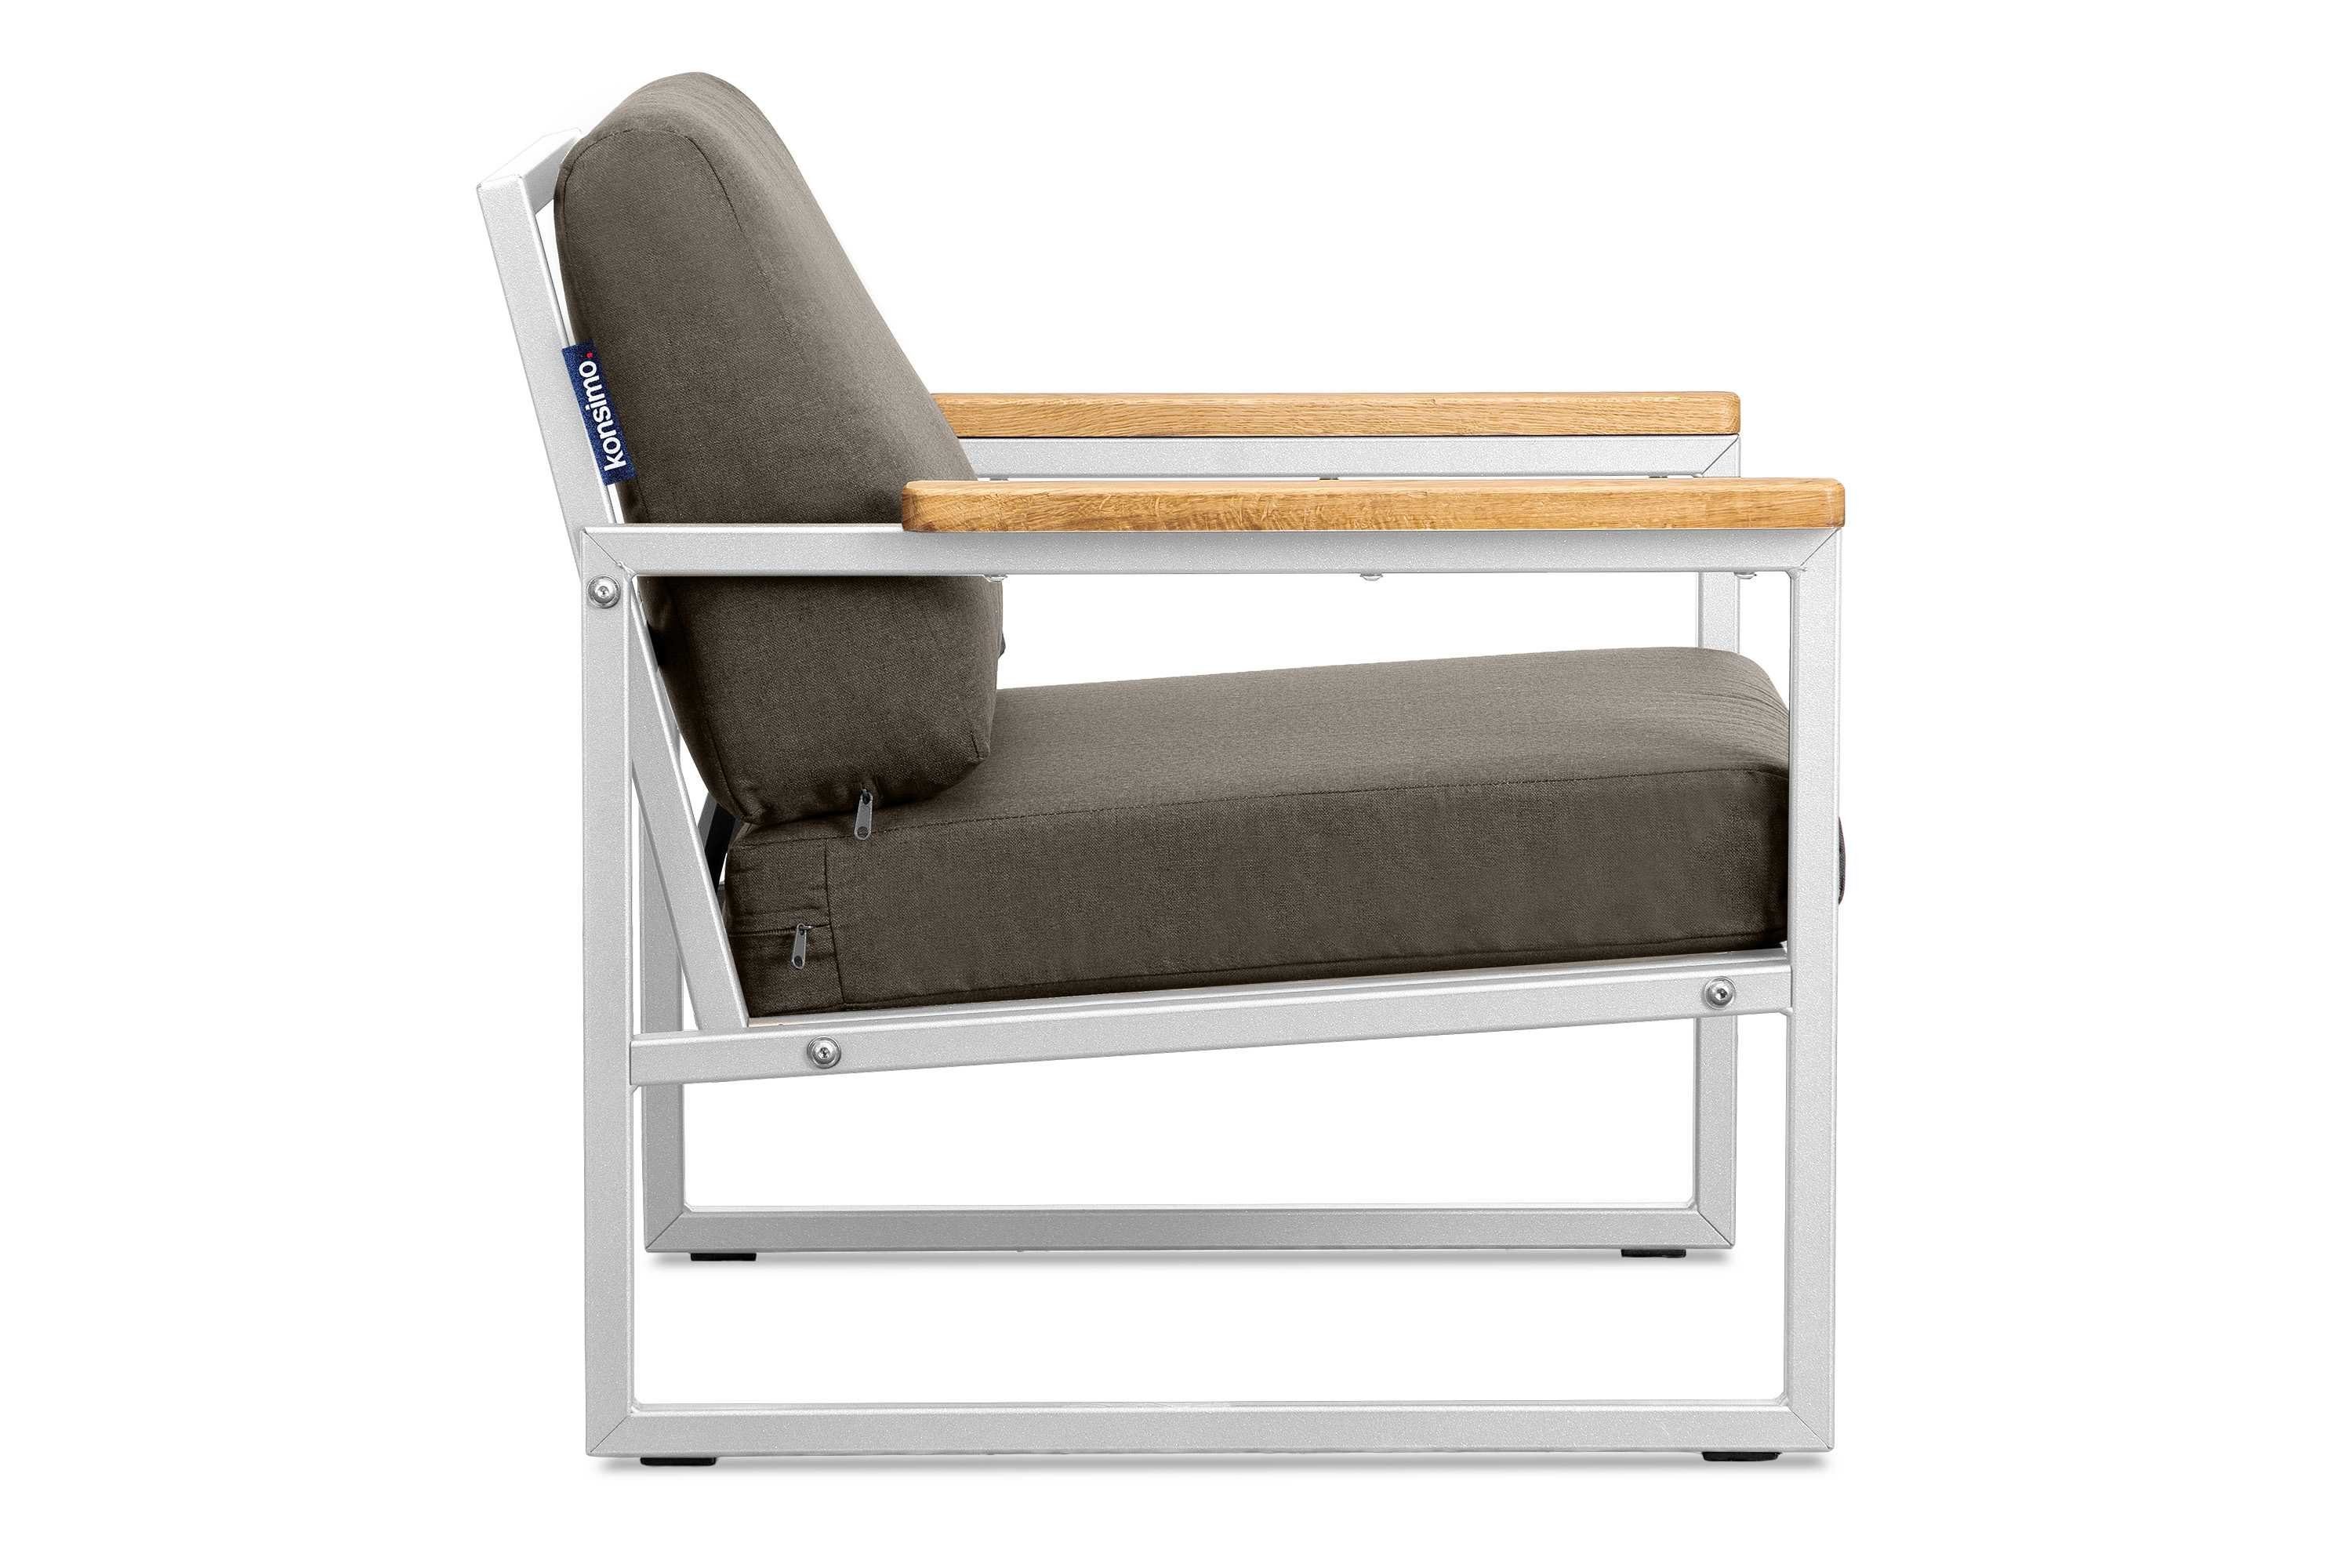 Made (1x Gartensessel schmutz- aus in Konsimo Handläufe Sessel), Eiche, und weiß/beige Gartensessel Europe UV-Beständigkeit, wasserabweisend, TRIBO geölter